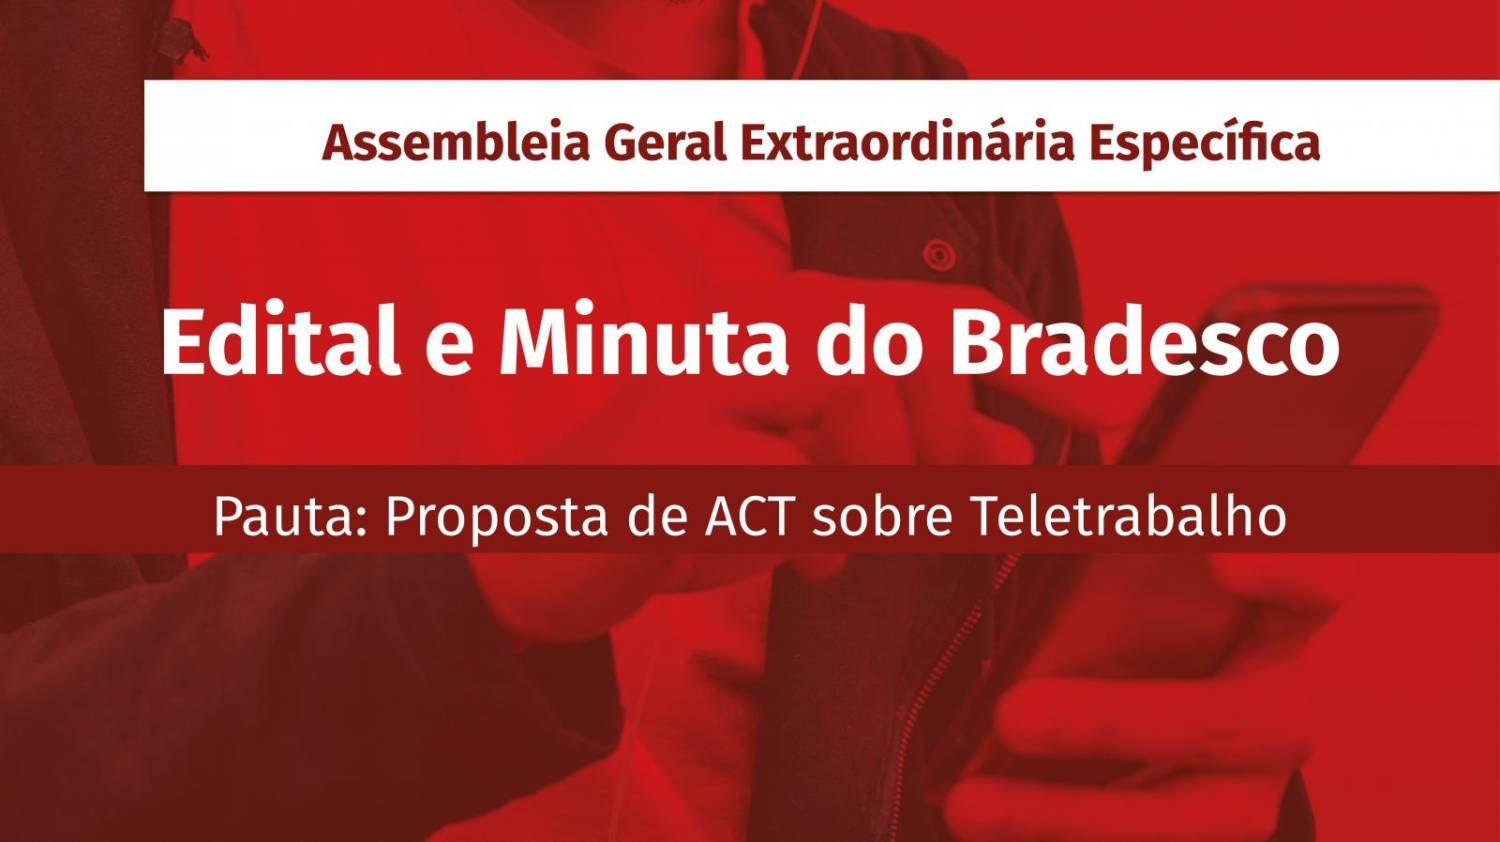 Atenção Funcionários Bradesco: Assembleia Extraordinária Específica sobre Teletrabalho